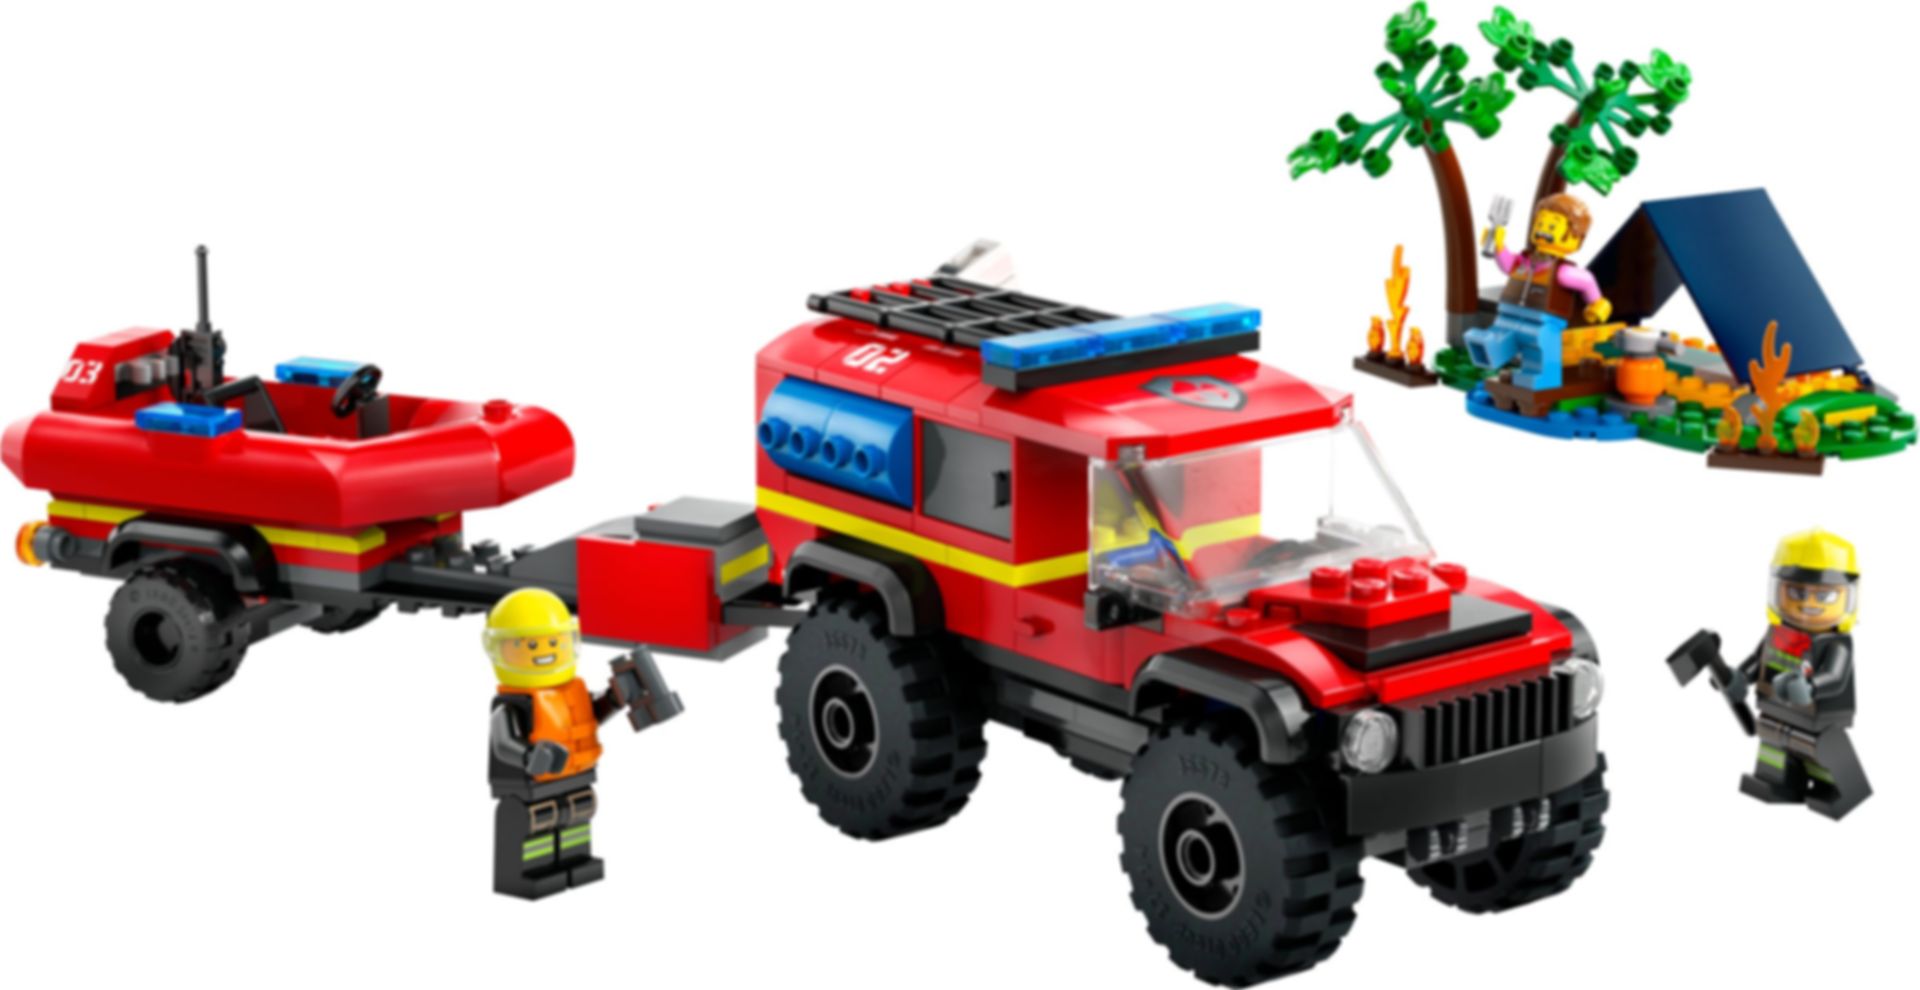 LEGO® City 4x4 brandweerauto met reddingsboot componenten